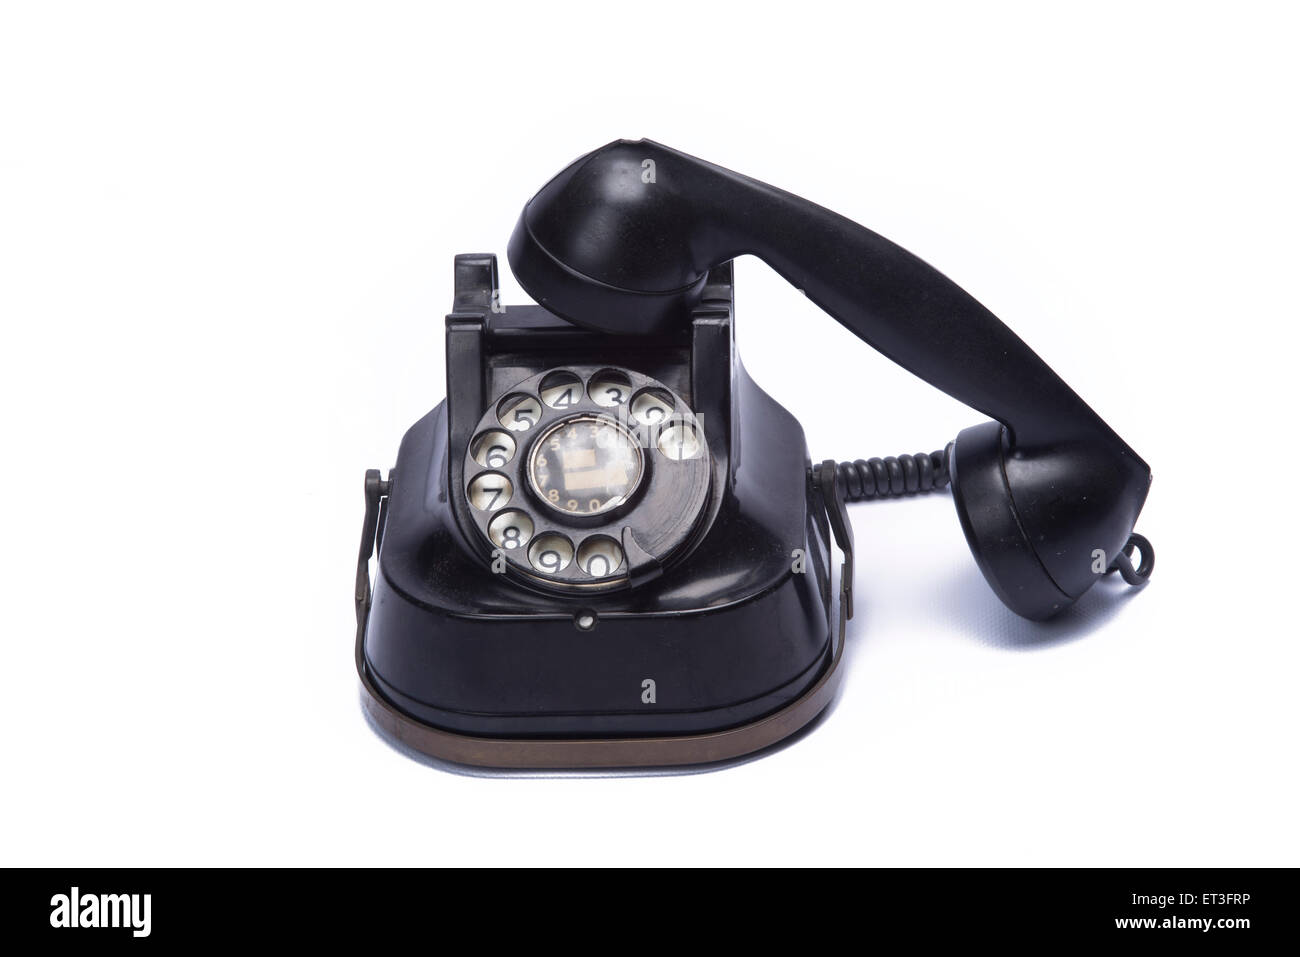 vintage telephone isolated on white background Stock Photo